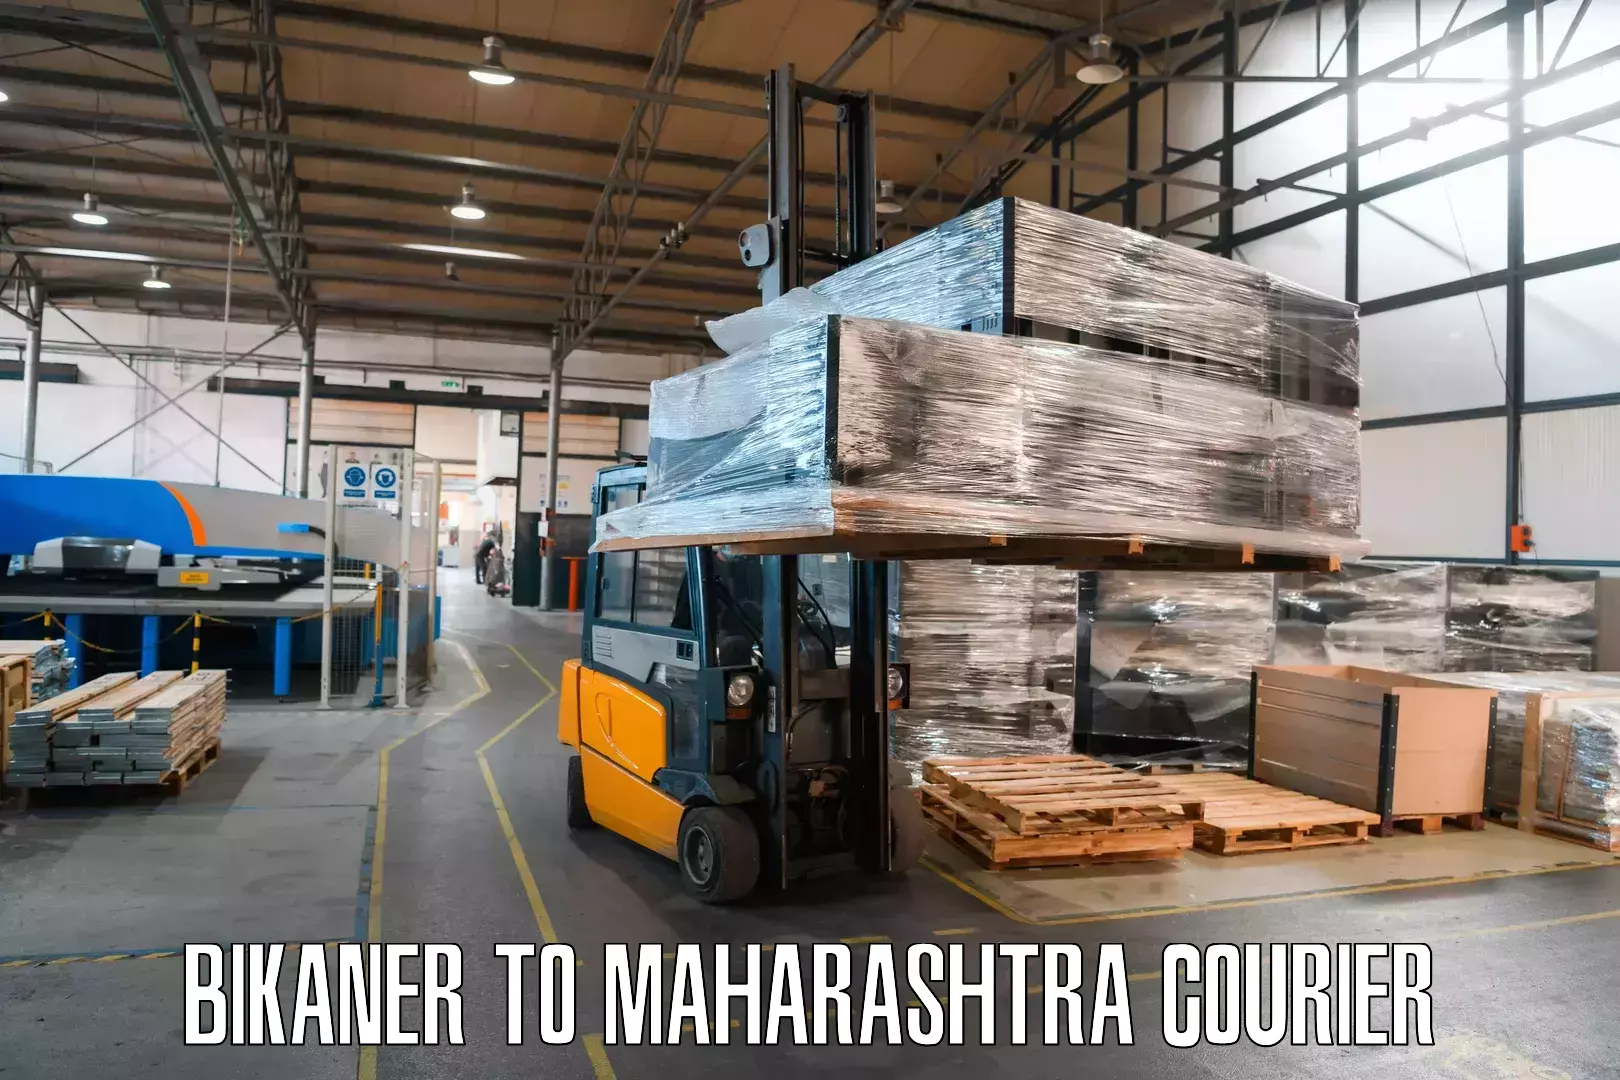 Dynamic courier operations Bikaner to Maharashtra